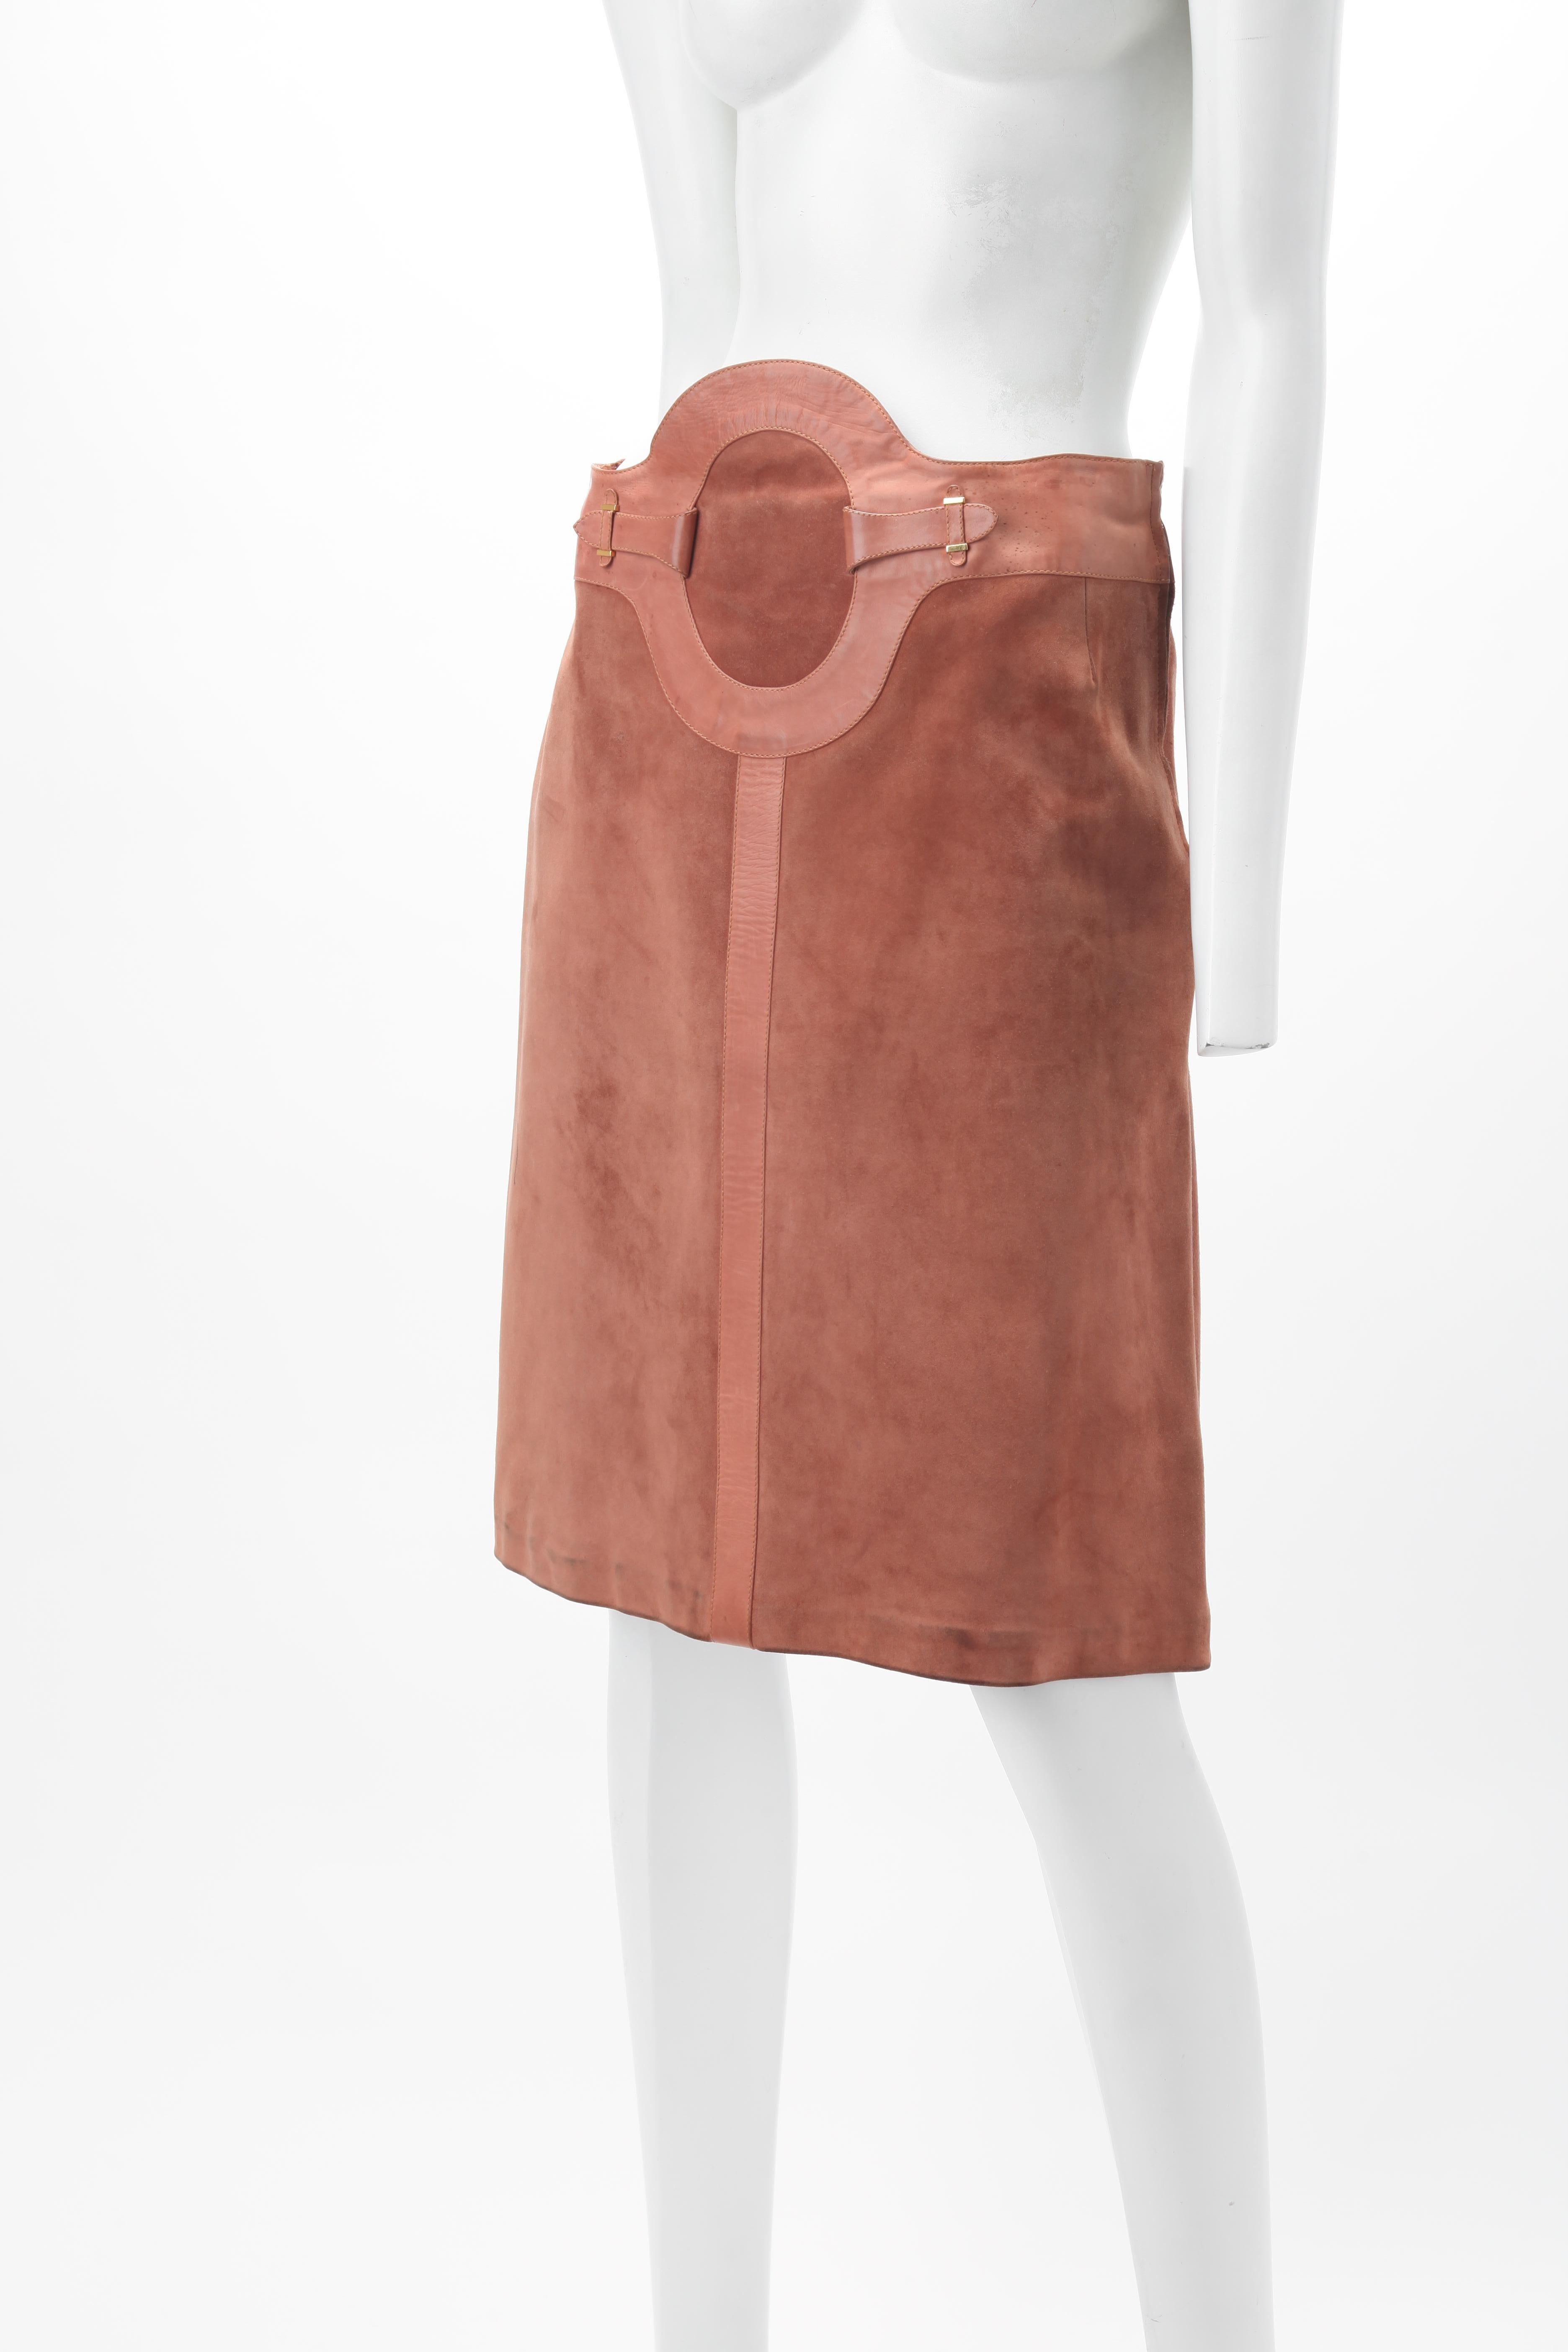 1970 GUCCI Archival Camel Suede A-Line Skirt ; Jupe longueur genou avec garniture en cuir ovale et boucles en métal doré ; Fermeture à glissière latérale ; Entièrement doublée avec le monogramme 